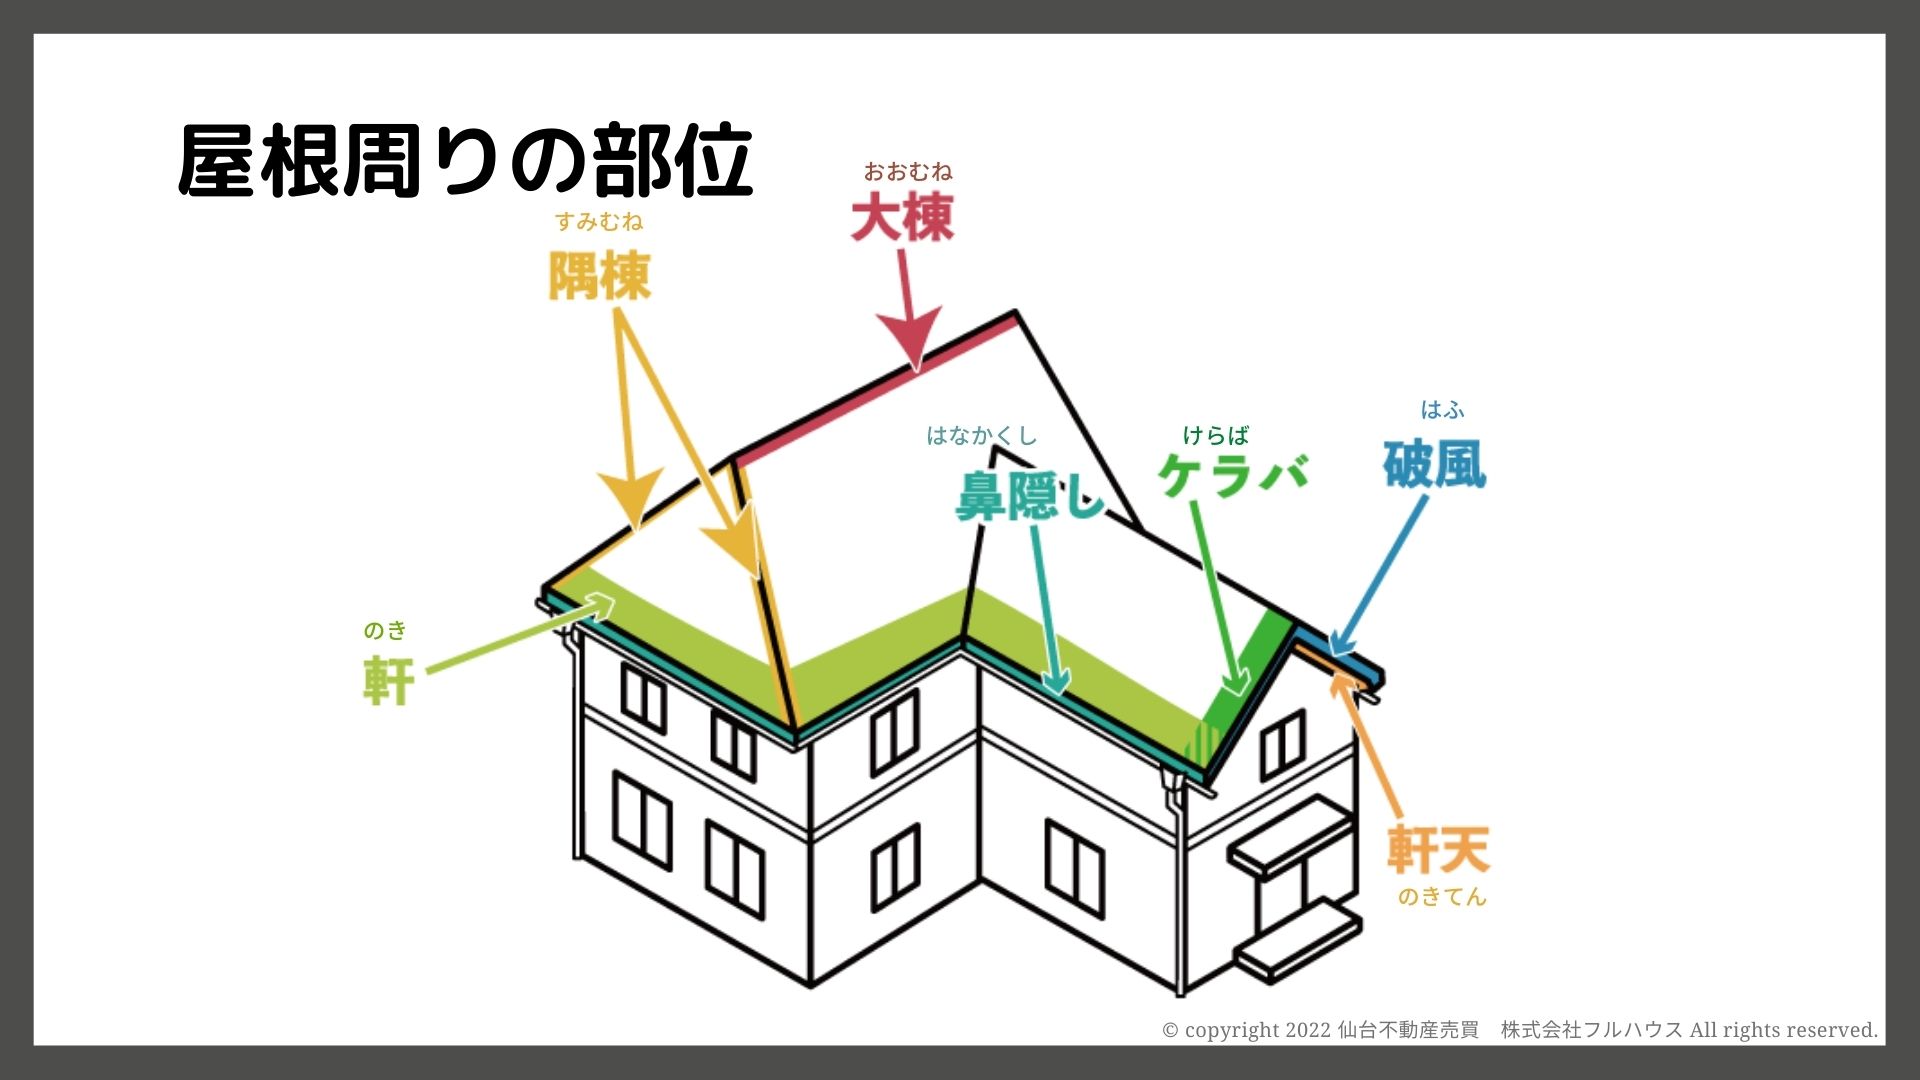 住宅構造の基礎知識知っておきたい「屋根や外壁部位の名称」編 - 仙台の不動産売買 株式会社フルハウス